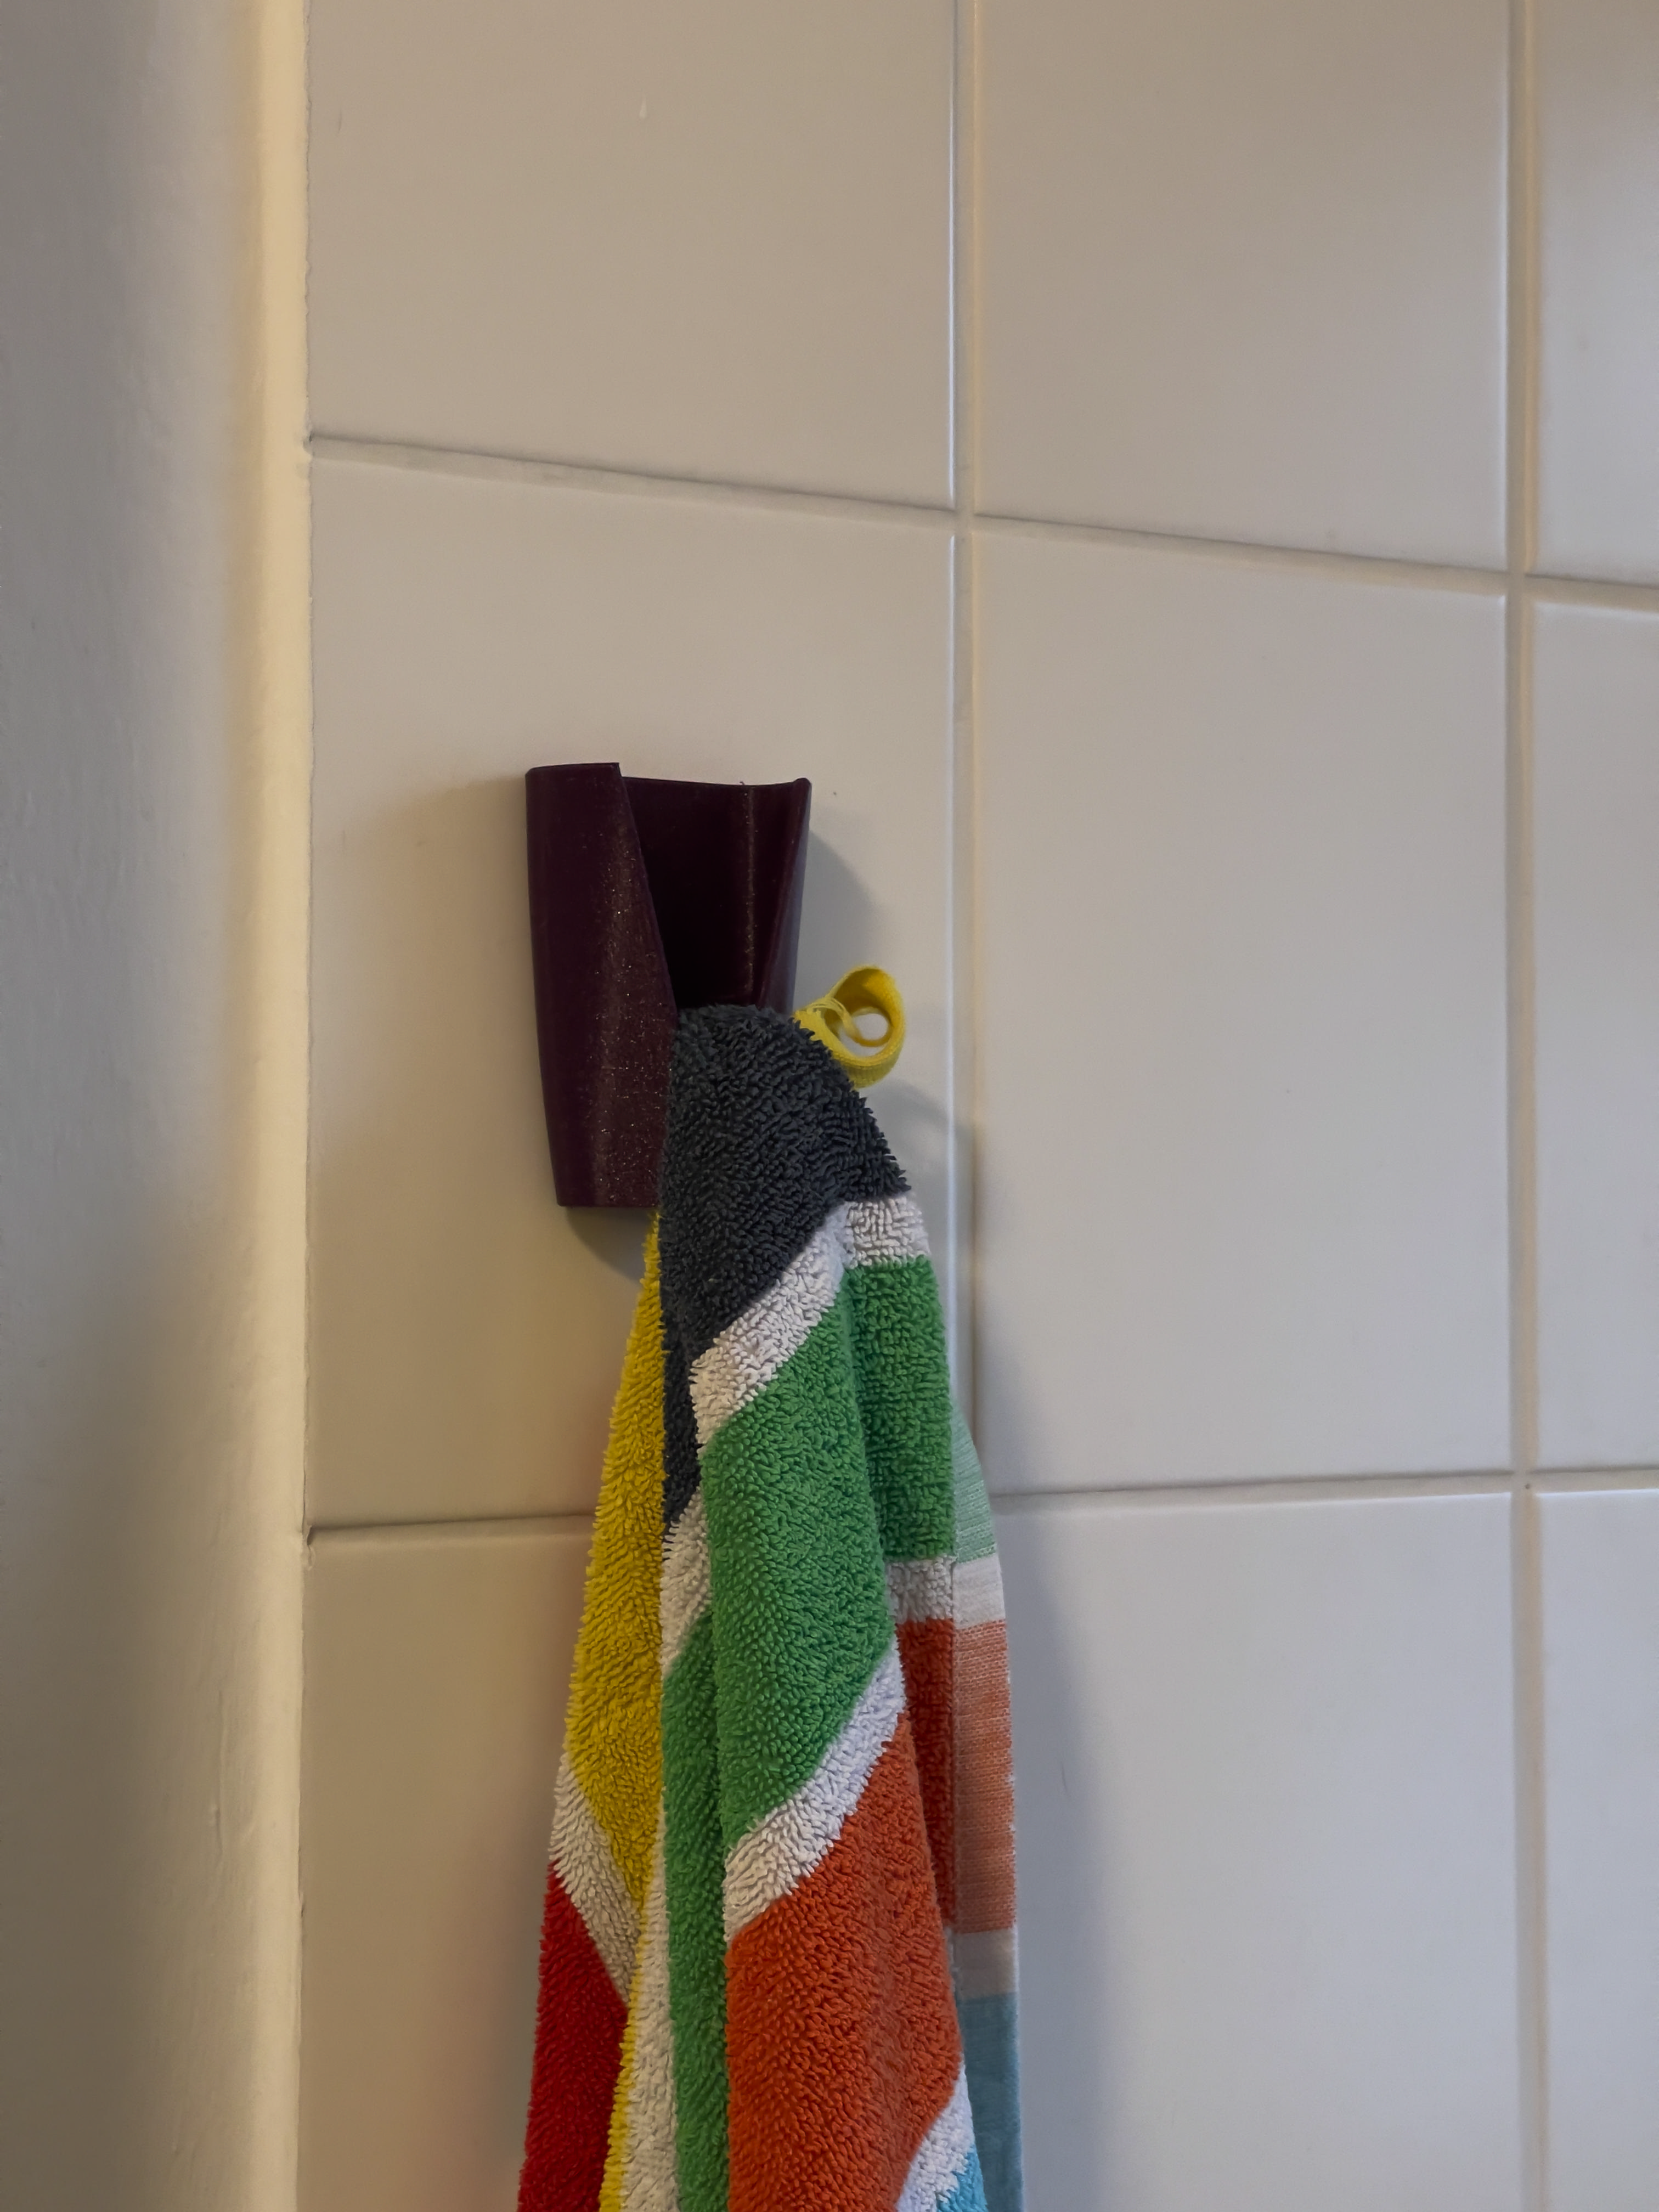 Towel / Clothes Hanger